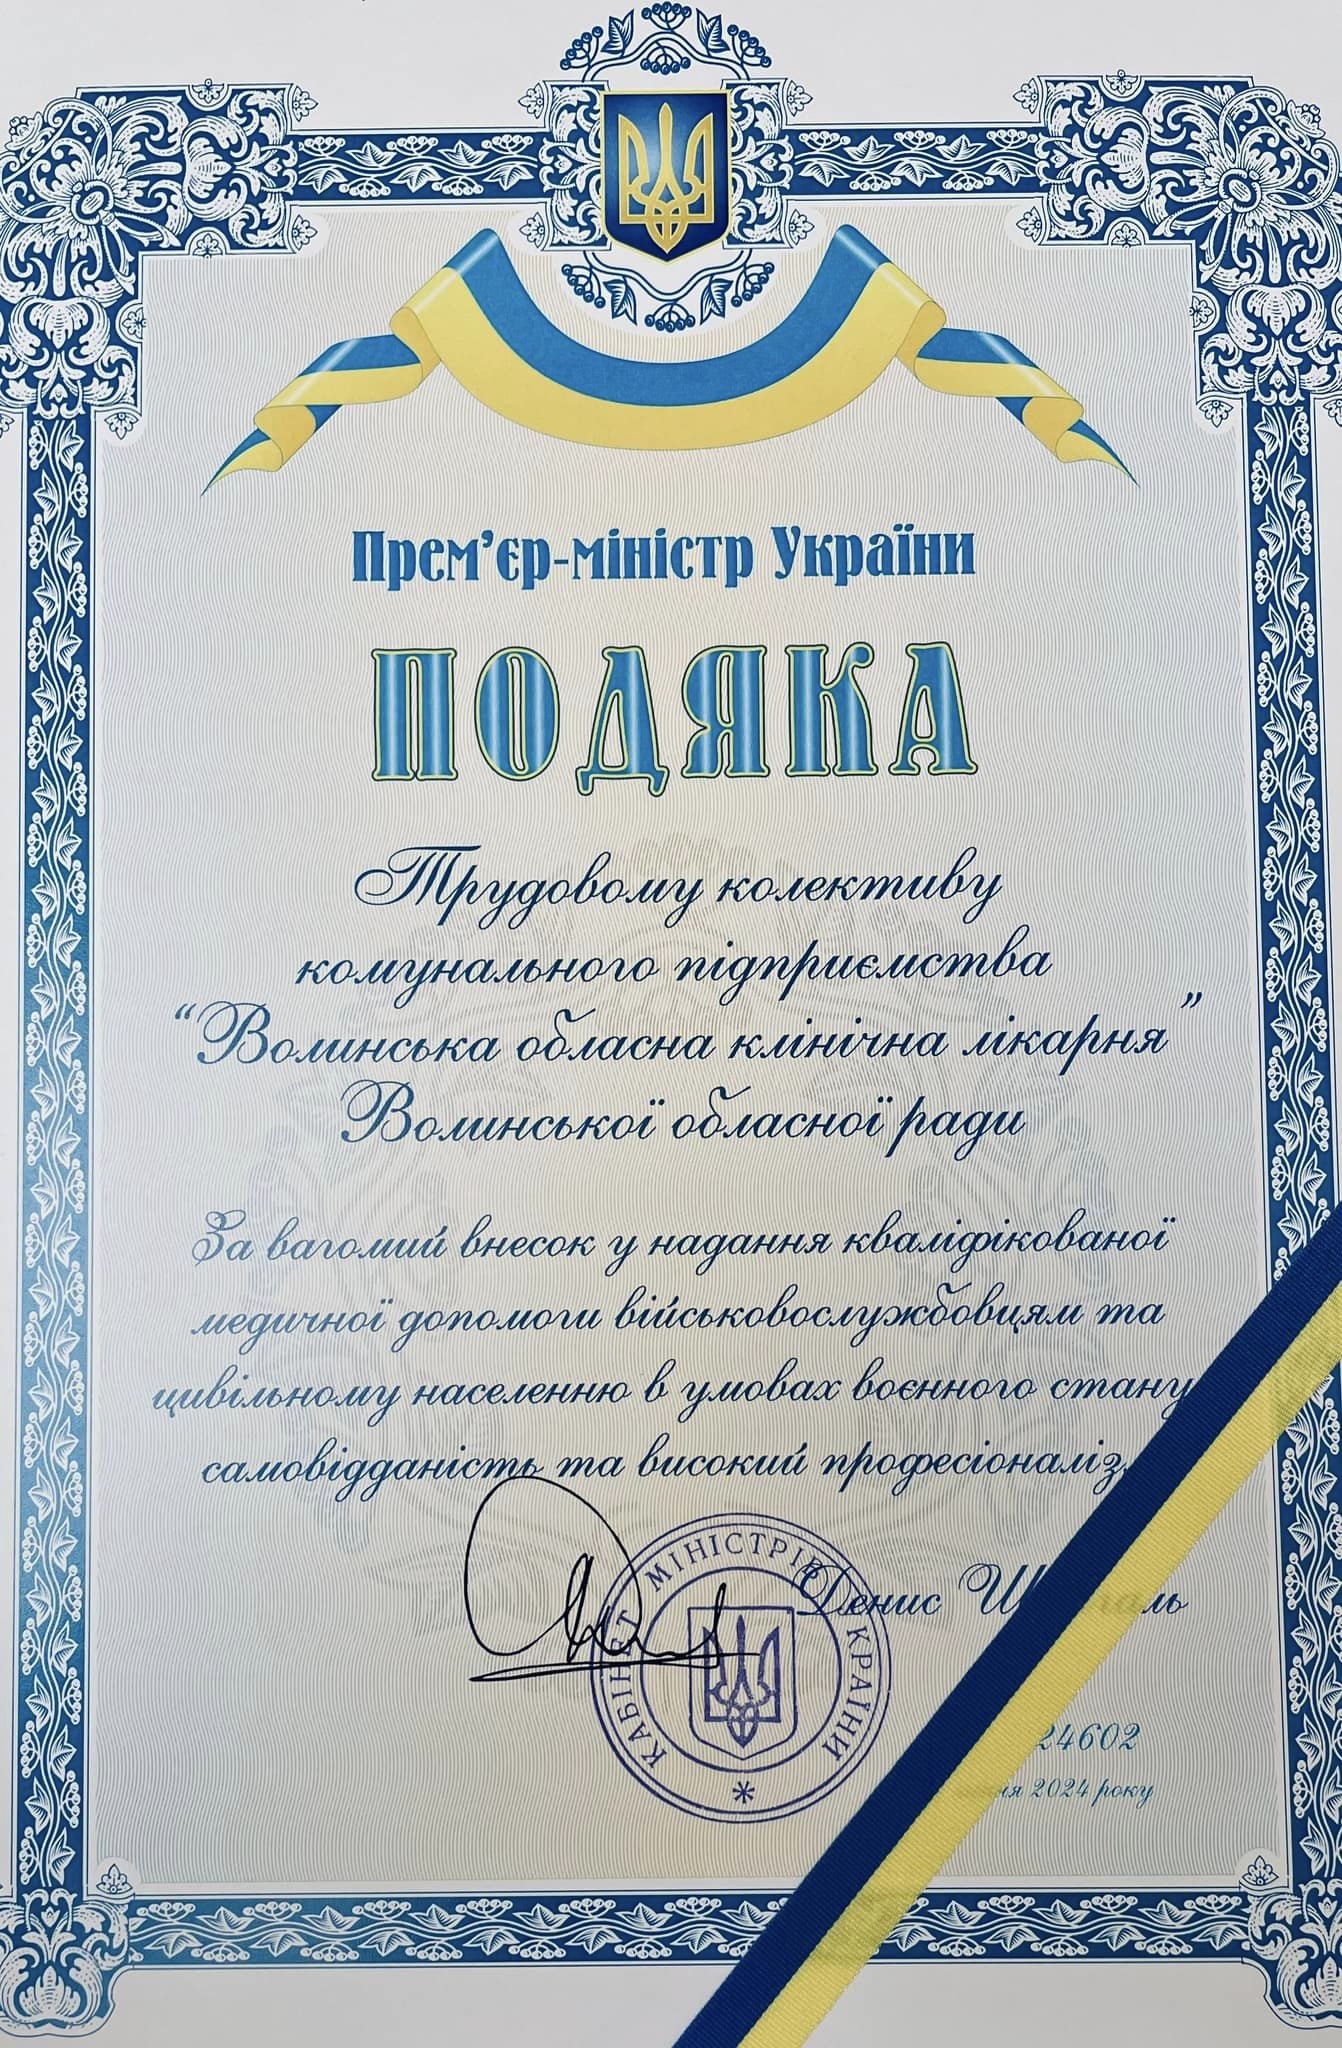 Колектив Волинської обласної лікарні отримав відзнаку від прем'єр-міністра України